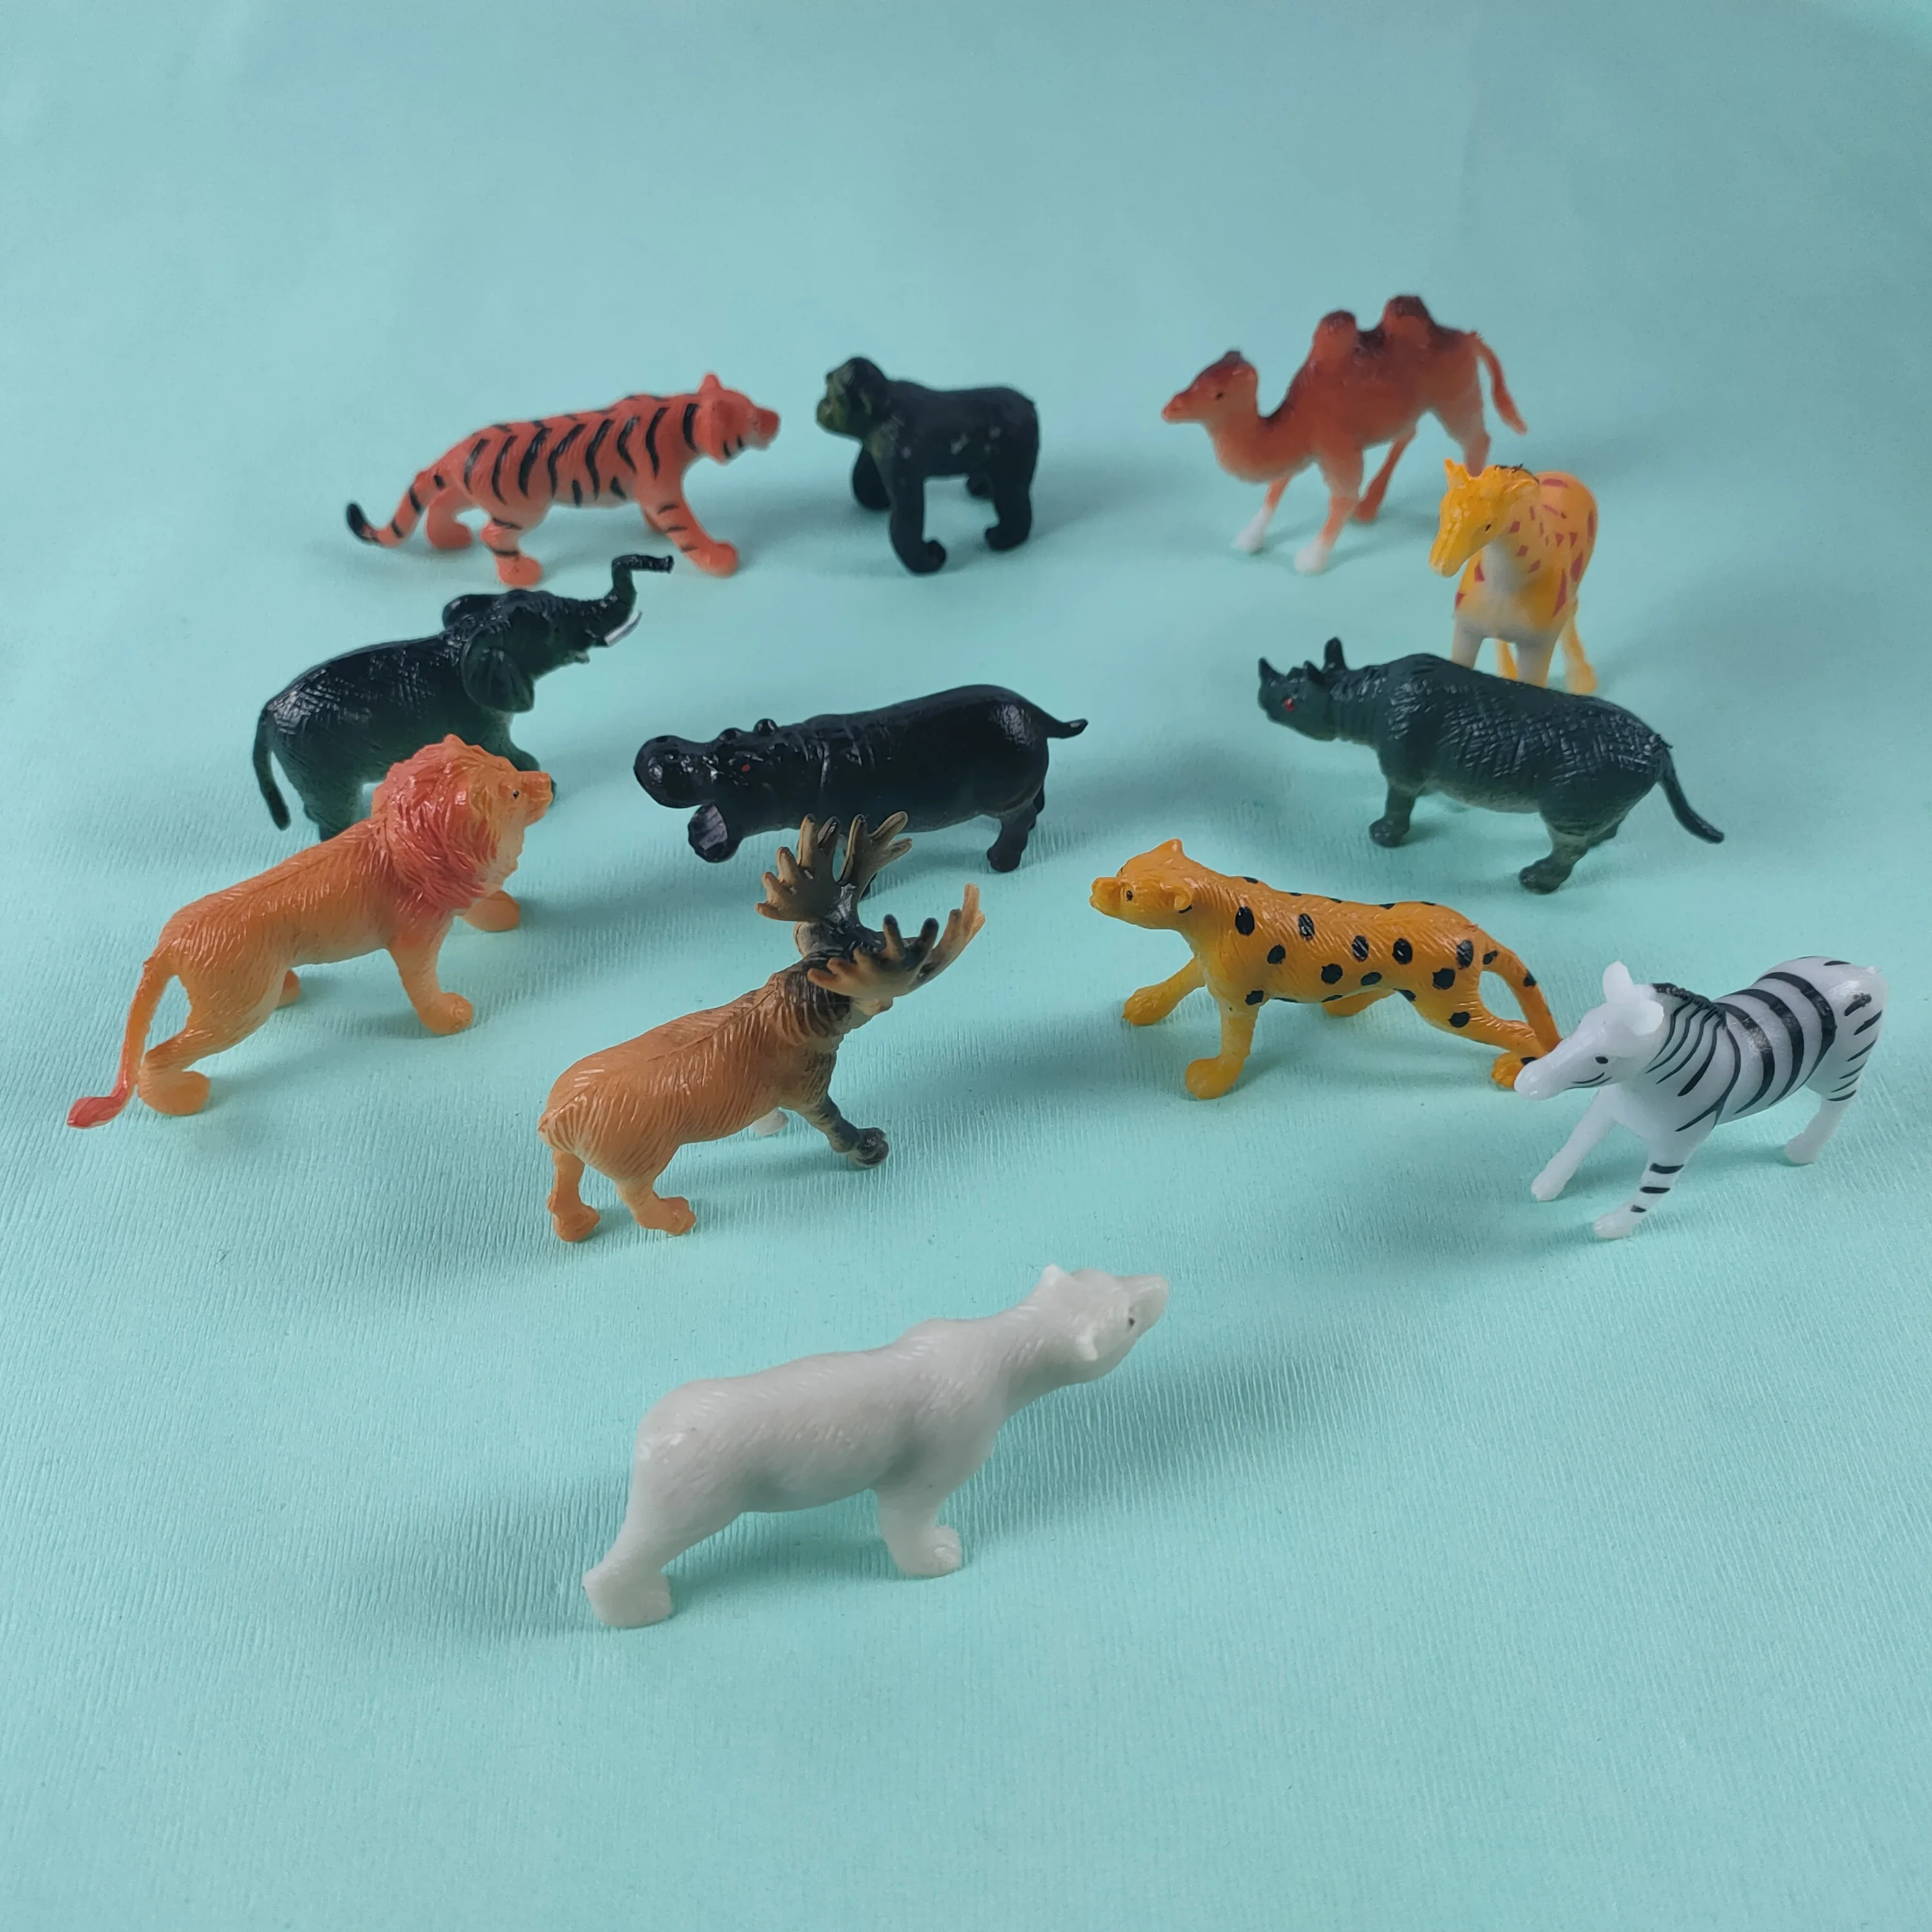 Details about   Noah's Ark Miniature Play Set Replacement Part Plastic Figure Tiger Lion Cat 